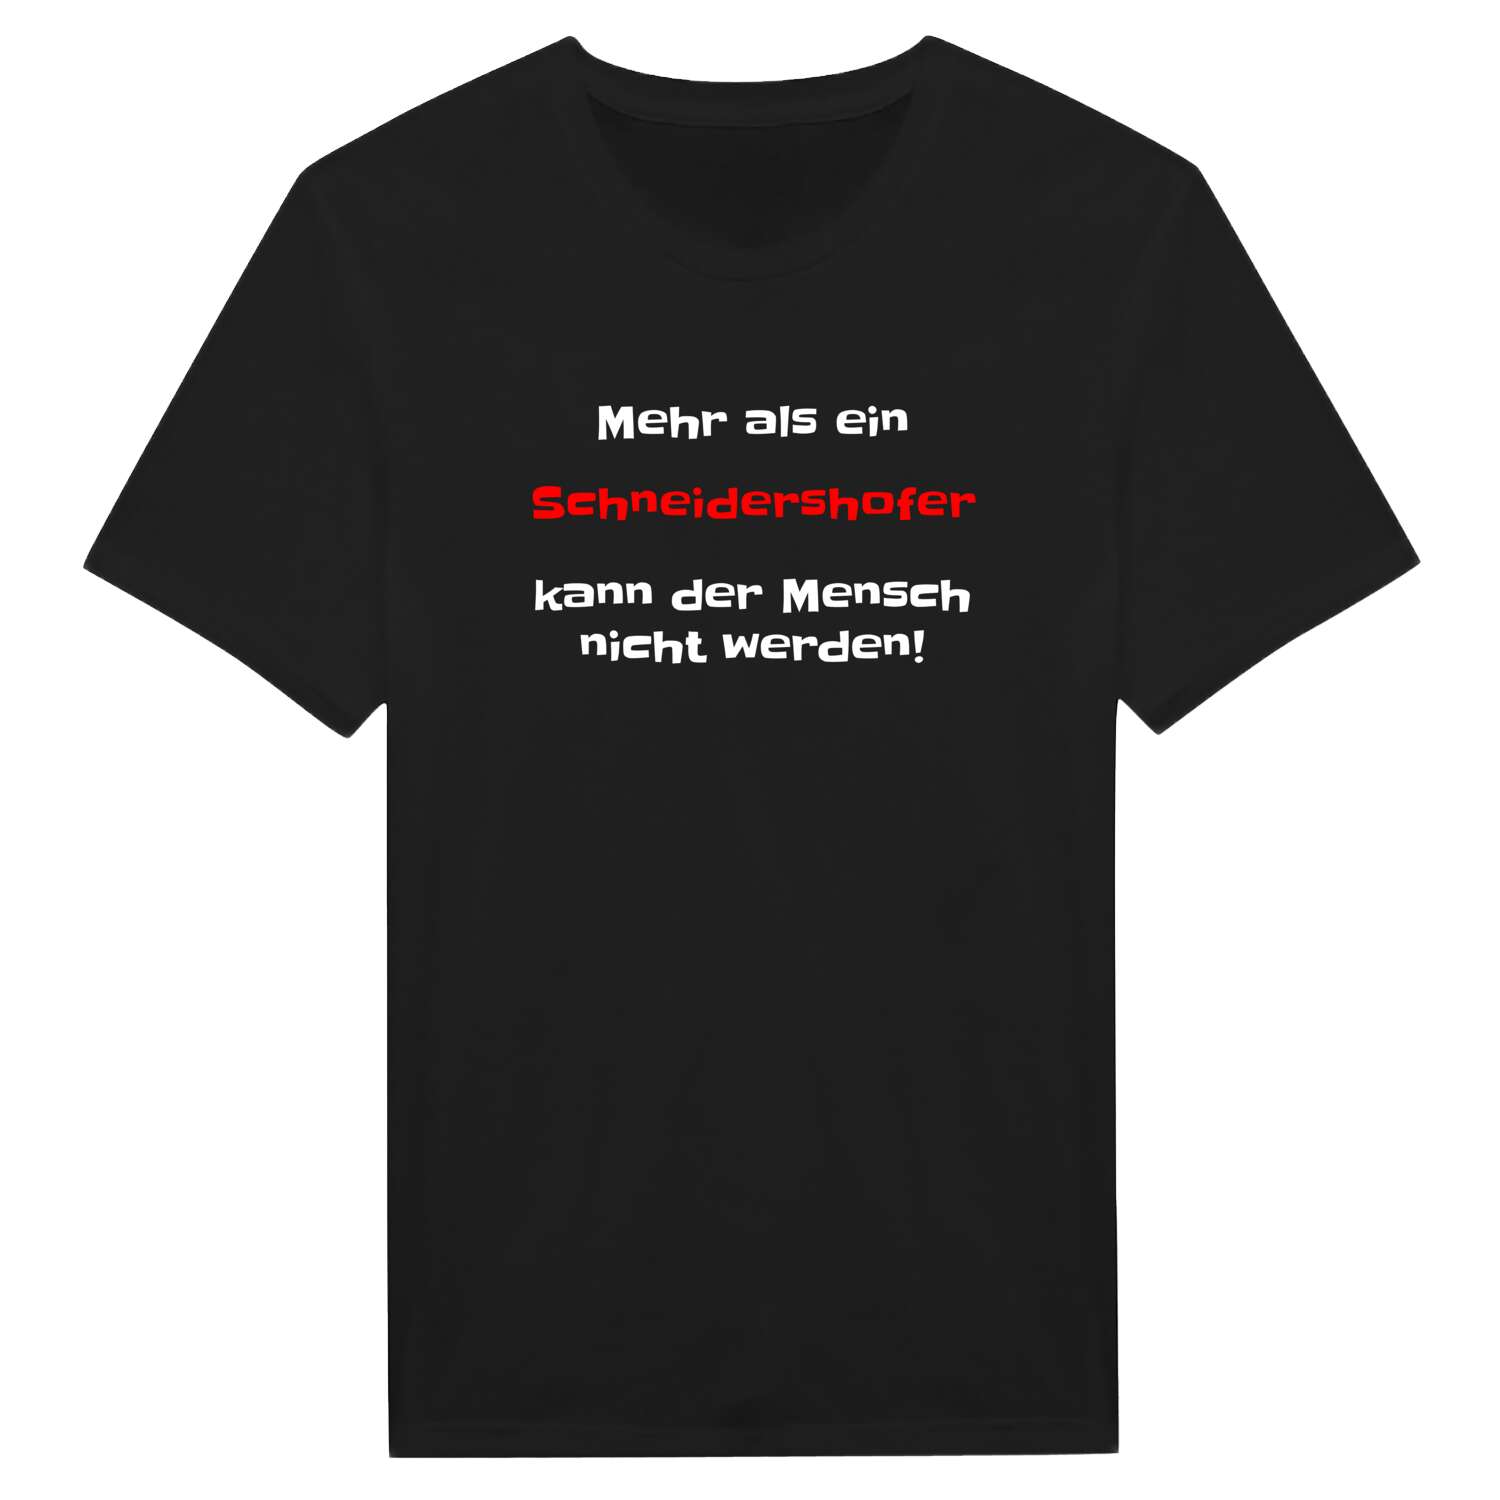 Schneidershof T-Shirt »Mehr als ein«